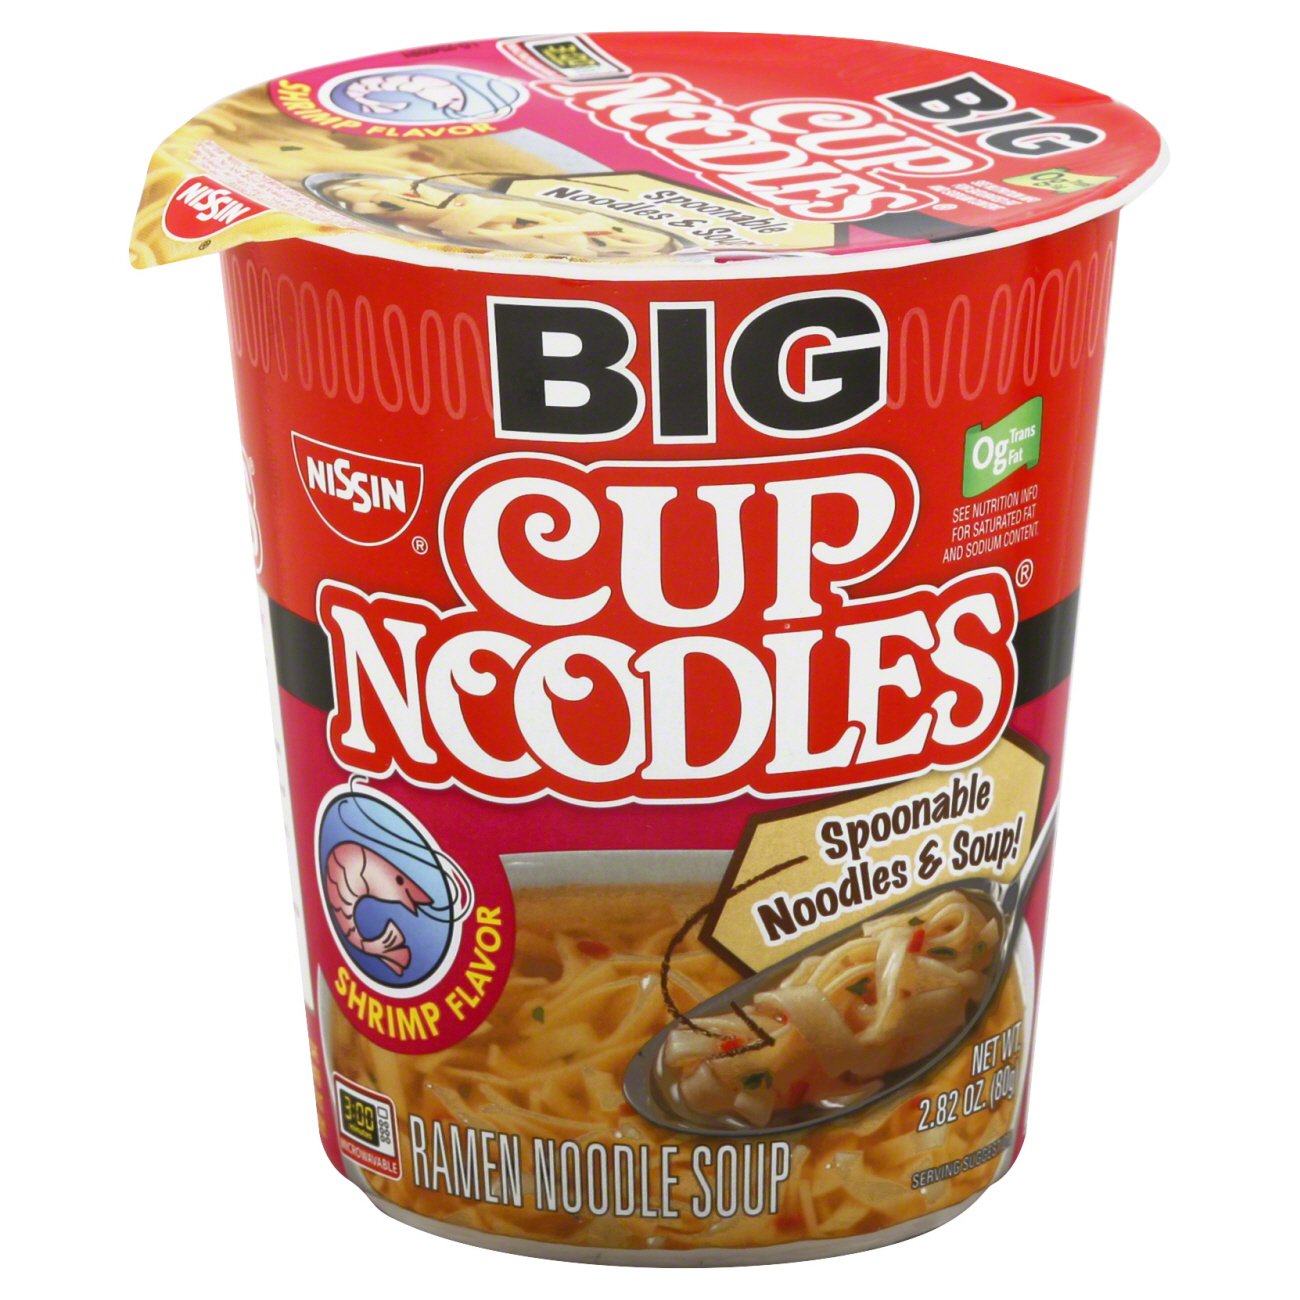 Nissin Big Cup Noodles Shrimp Flavor Ramen Noodle Soup - Shop Soups